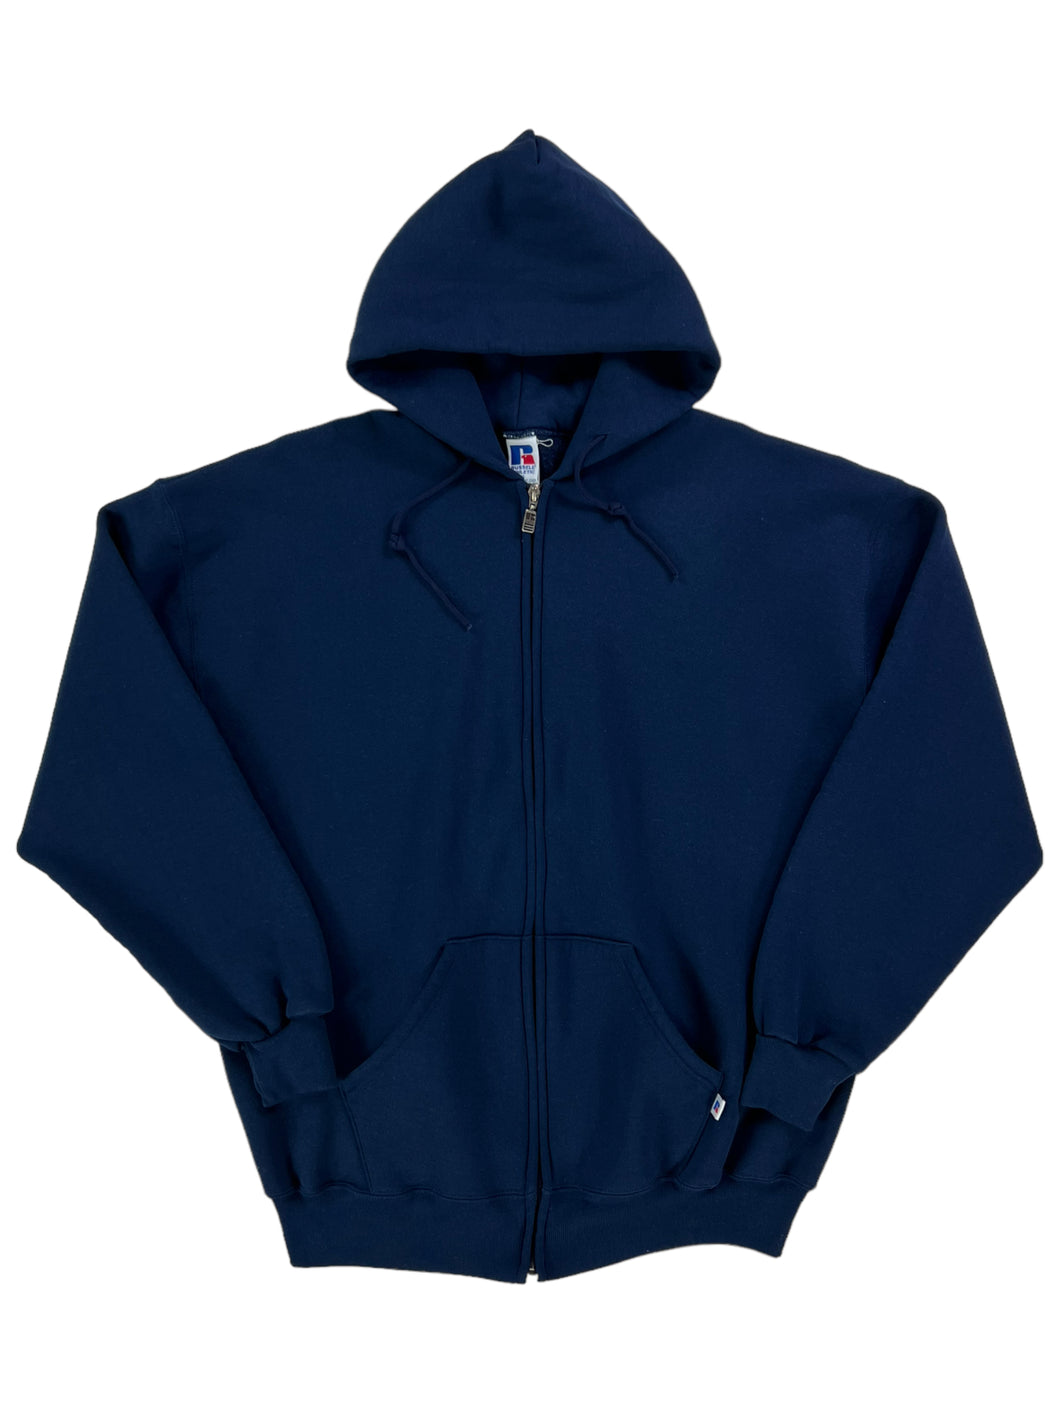 Vintage 90s Russell Athletic full zip up navy blank hoodie sweatshirt (XL)